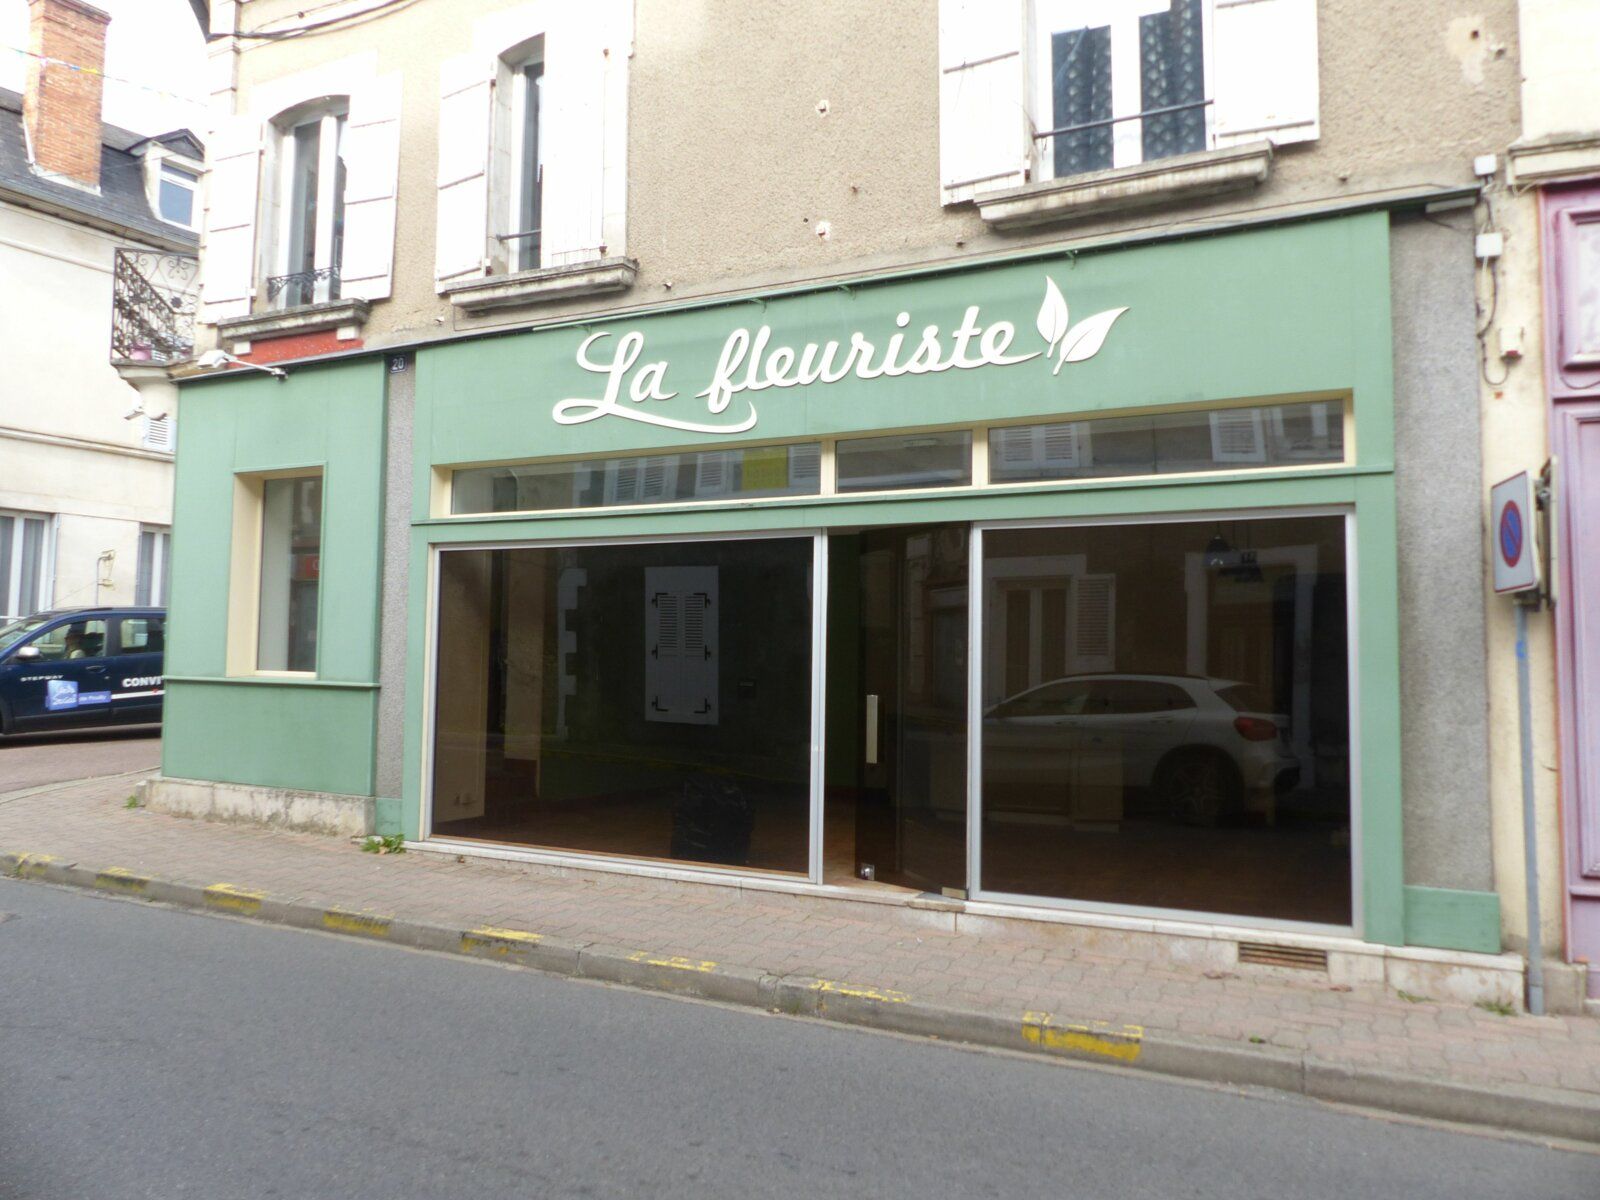 Fonds de commerce à louer 0 m2 à Pouilly-sur-Loire vignette-1